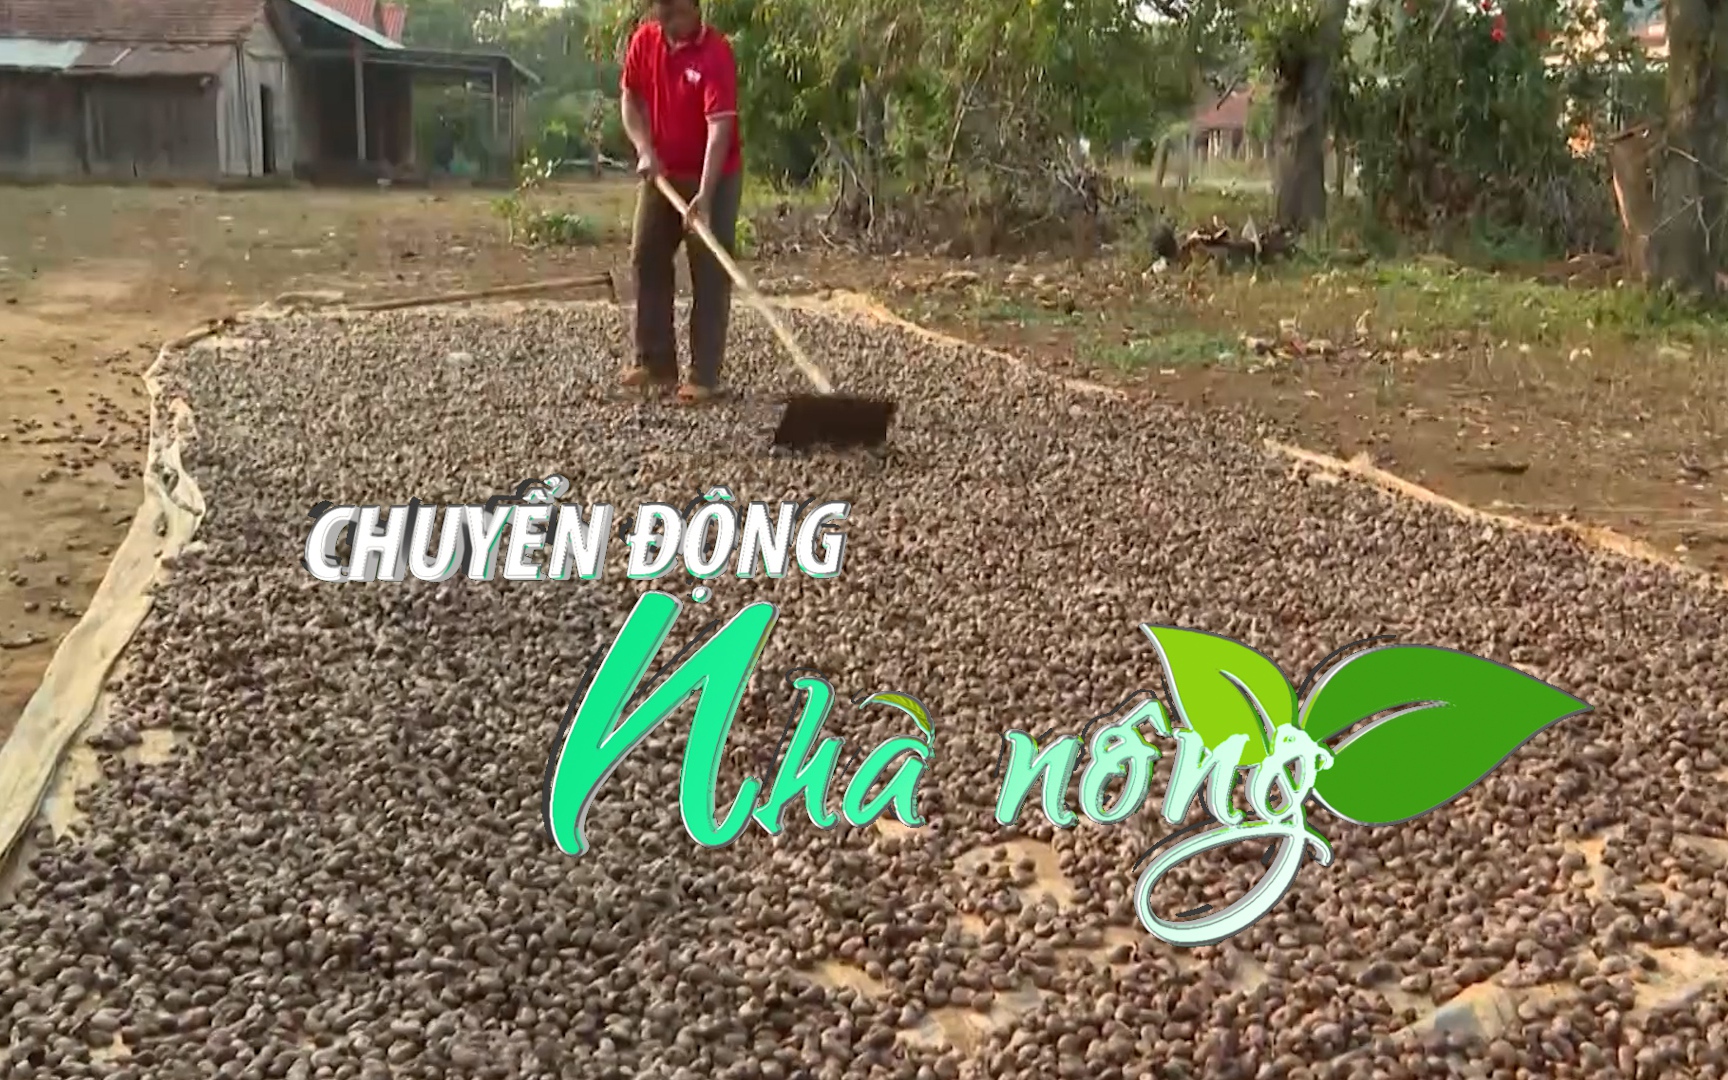 Chuyển động Nhà nông 4/4: Mưa liên tục khiến giá thu mua hạt điều tươi tại Bình Phước giảm sâu